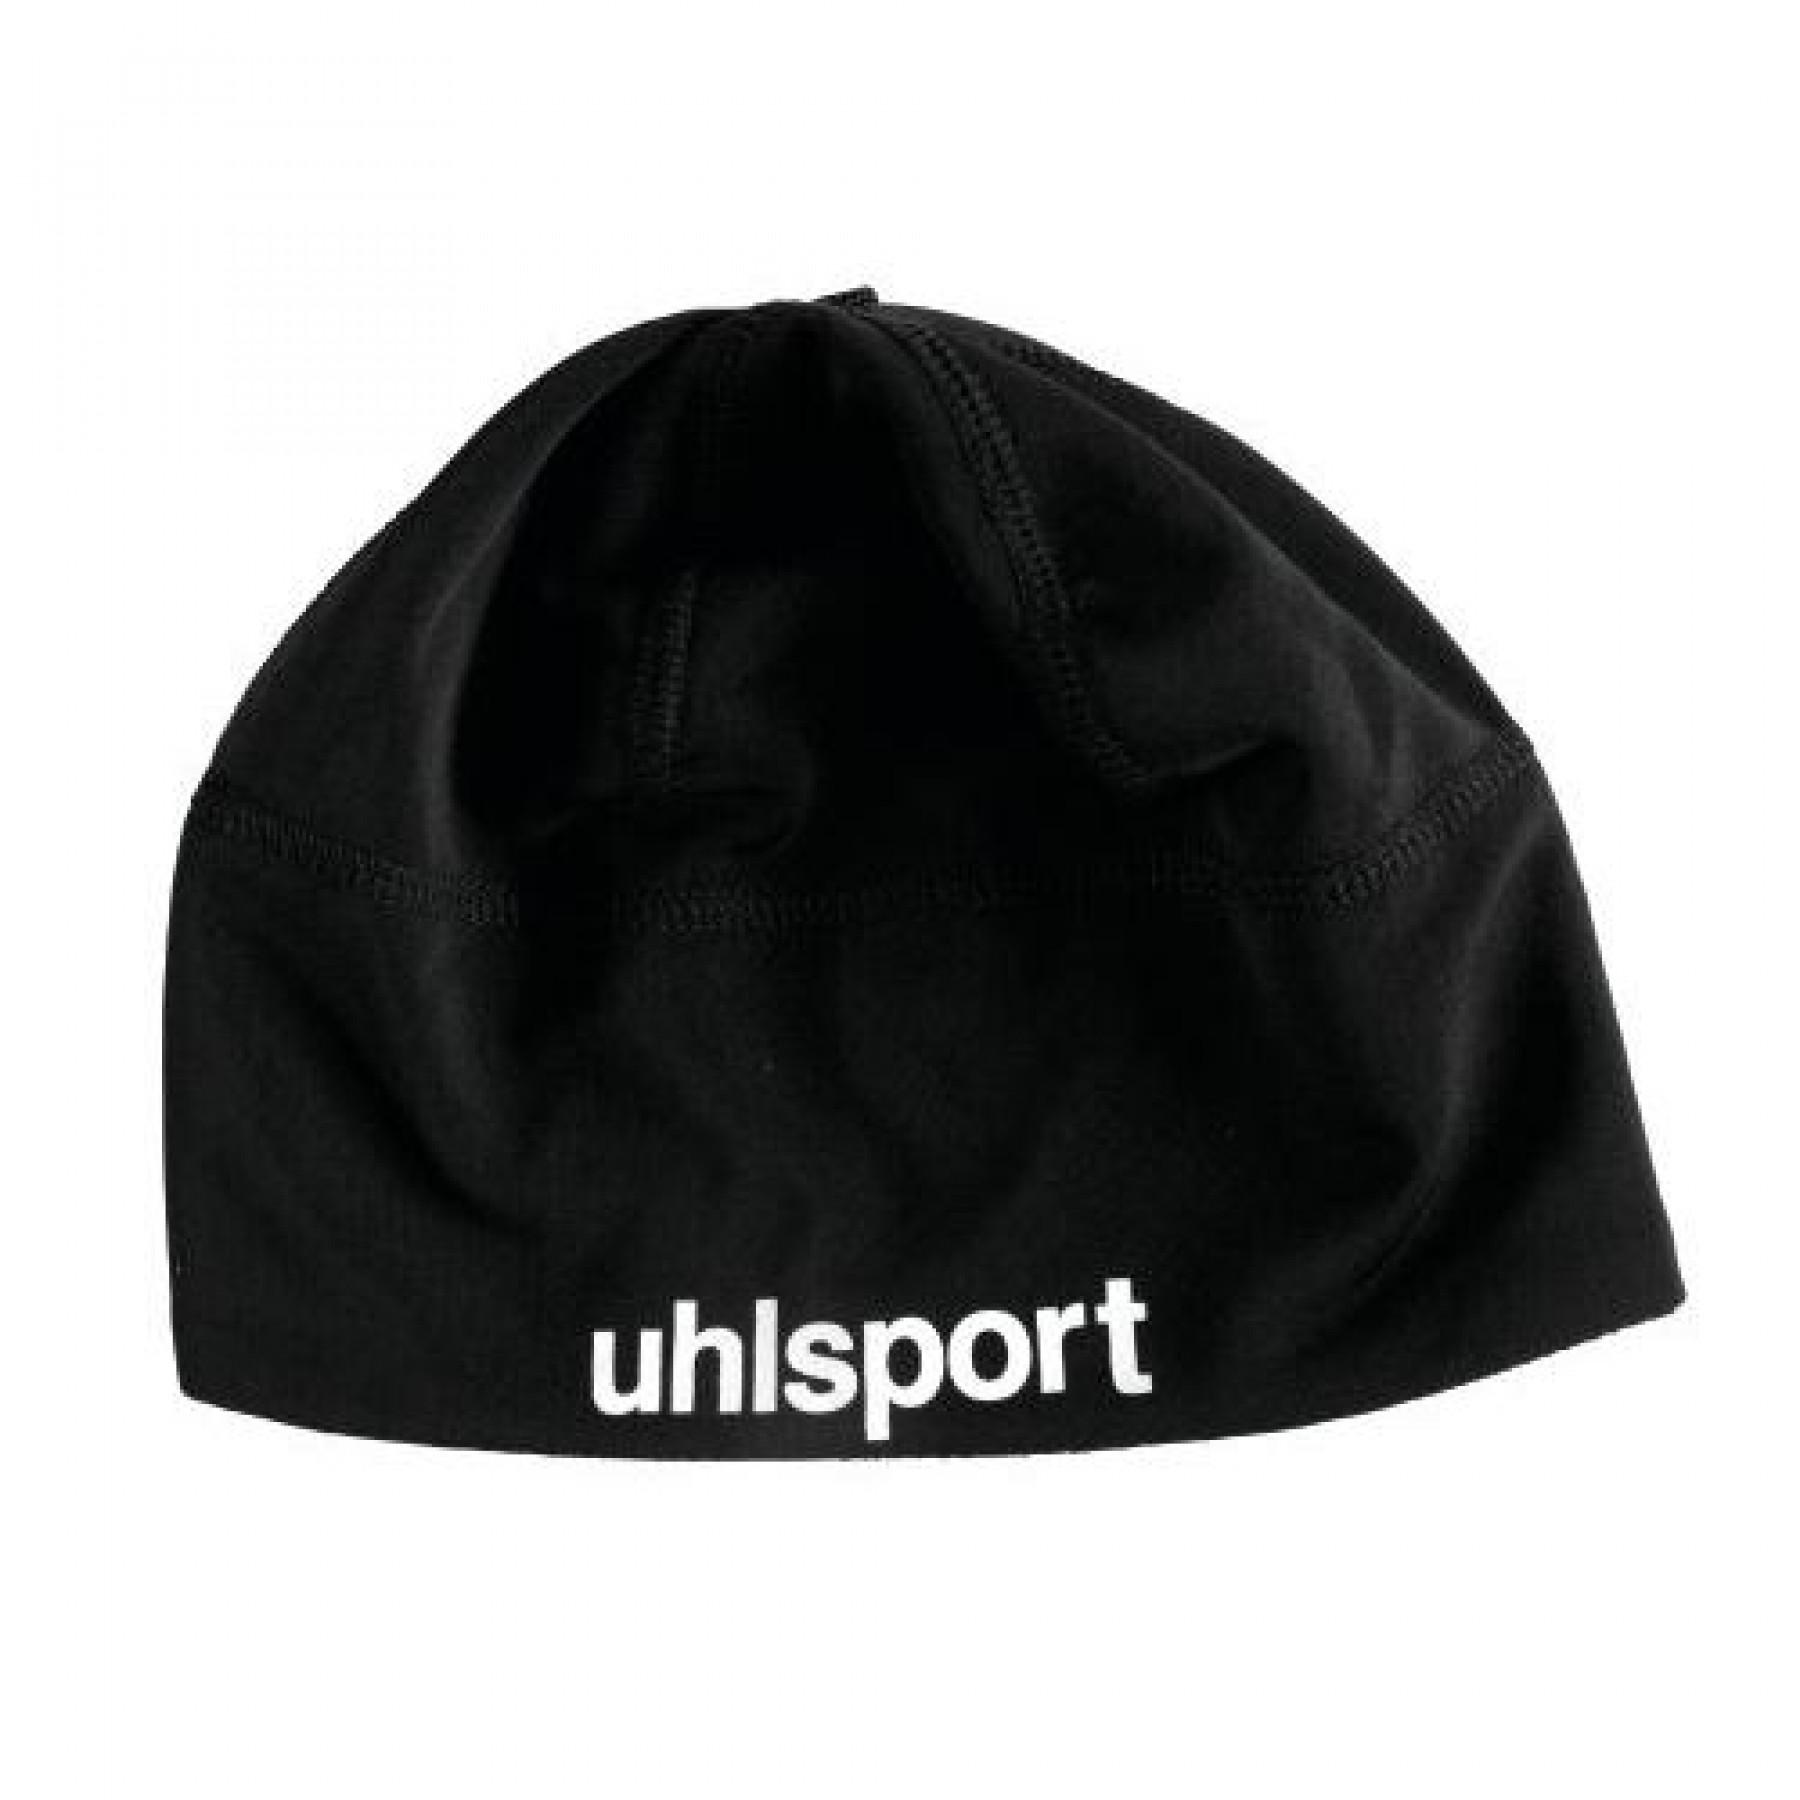 Training cap Uhlsport